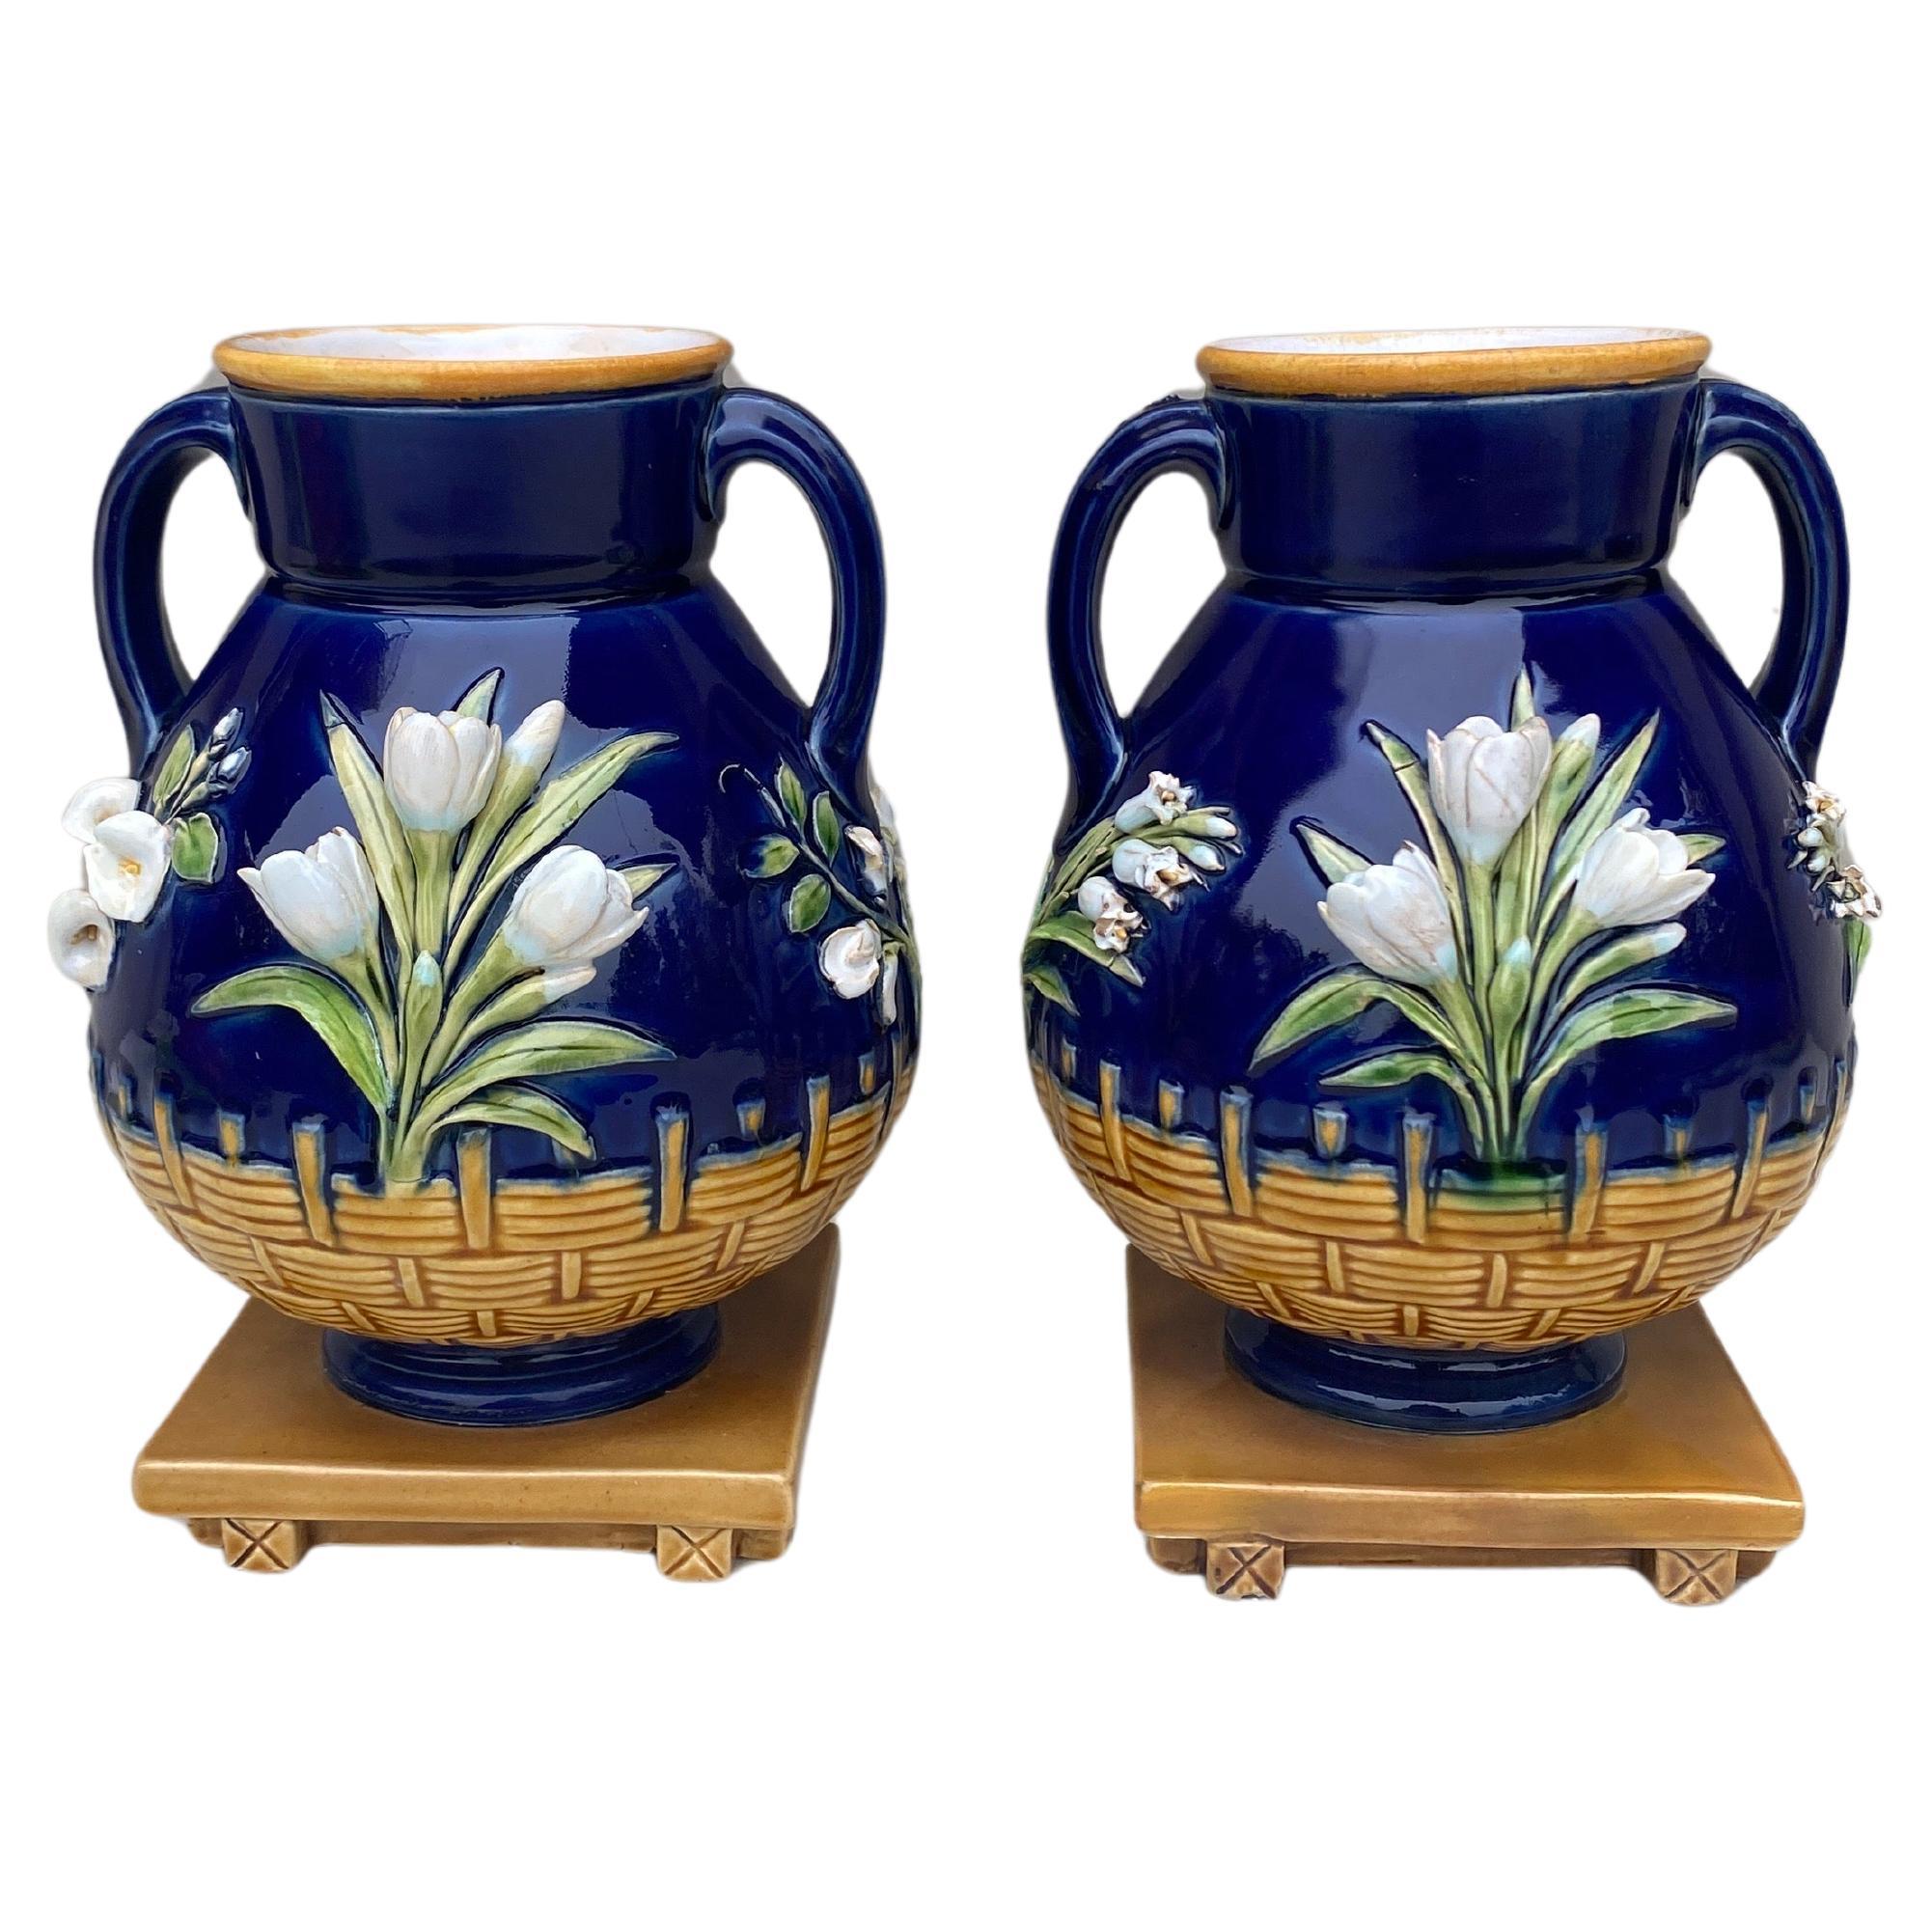 Paire de vases en cobalt de l'époque victorienne du 19e siècle Minton.
Décoré de fleurs blanches.
